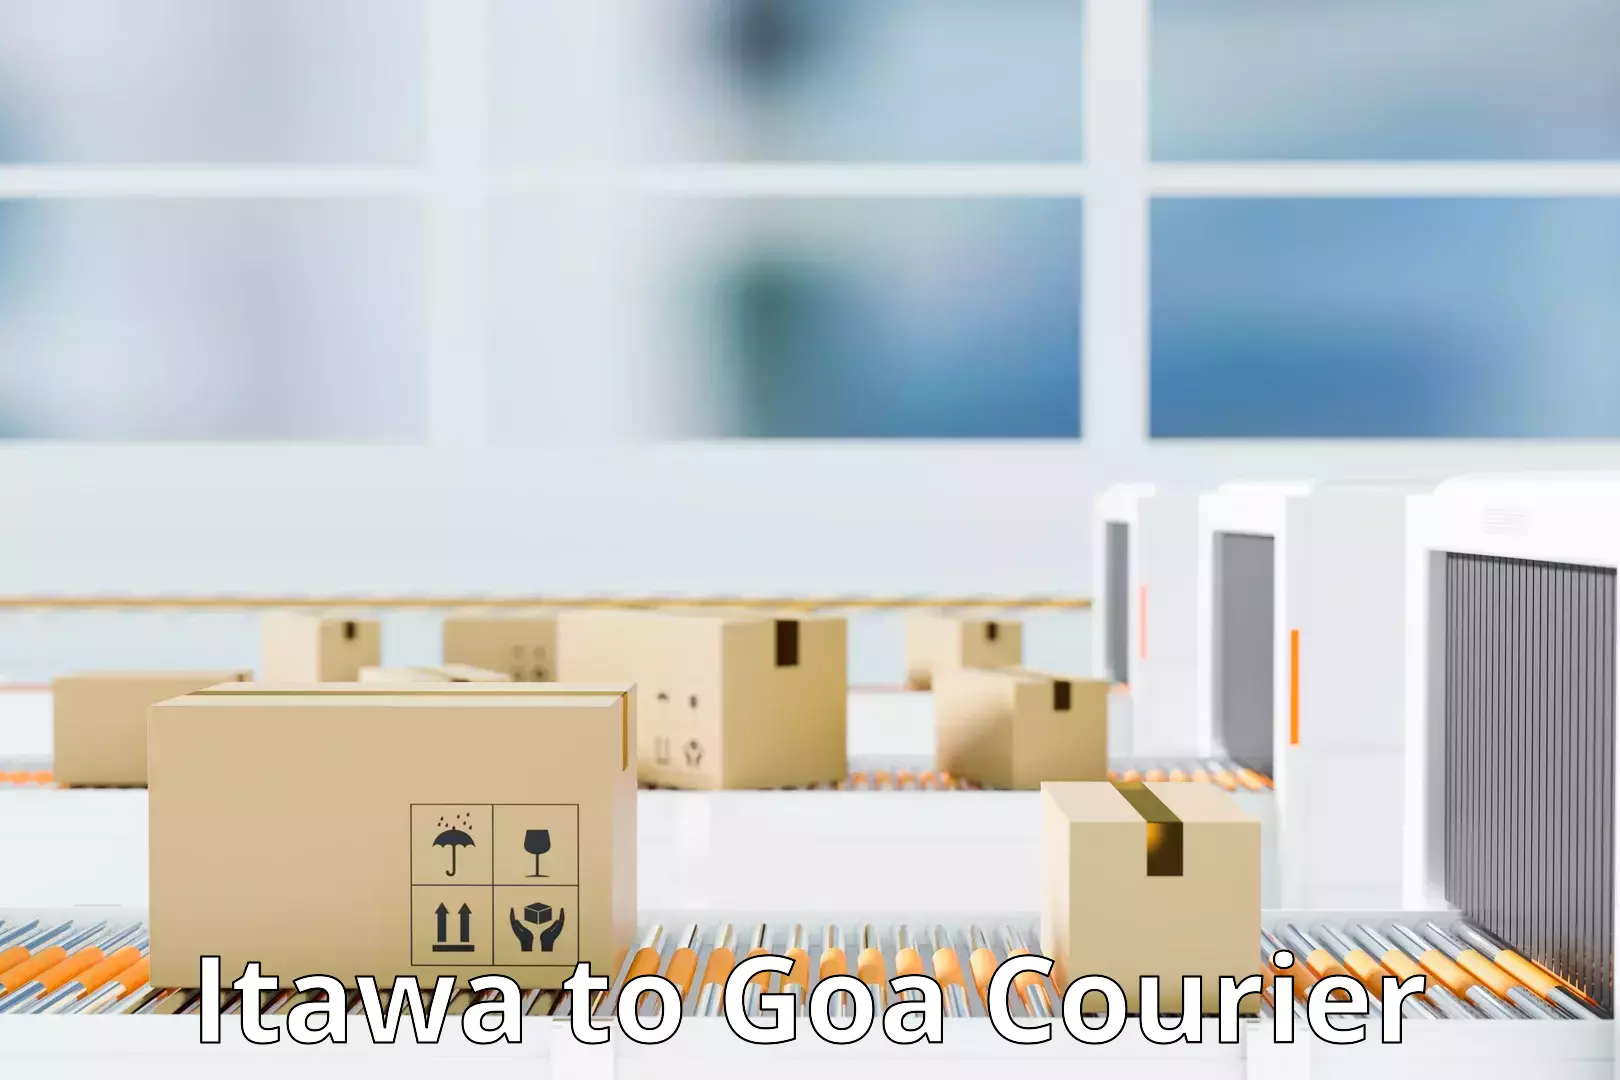 Quality courier partnerships Itawa to Goa University